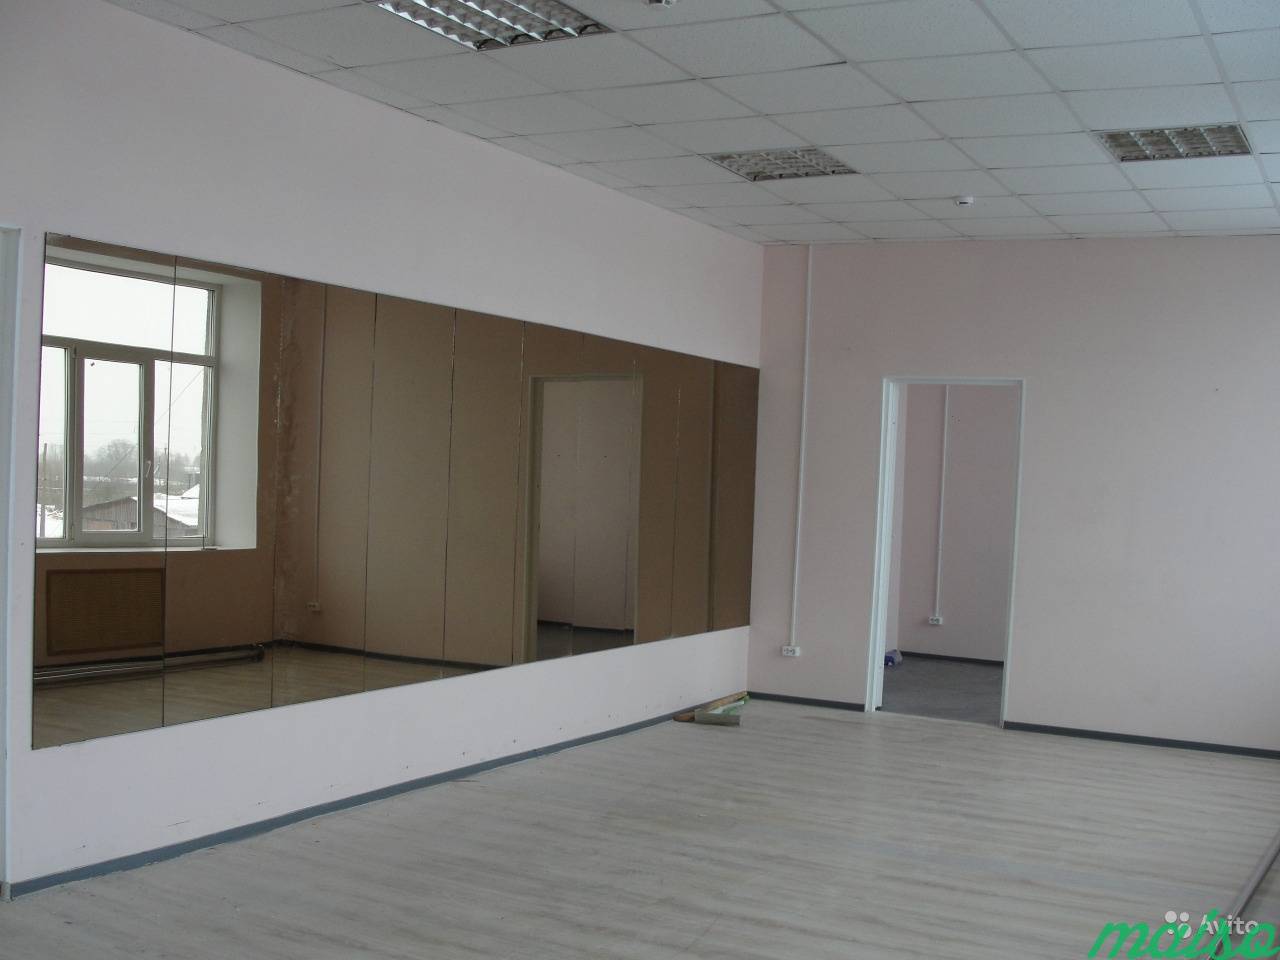 Офисное помещение в Славянке, от 12 м² до 500 м² в Санкт-Петербурге. Фото 10